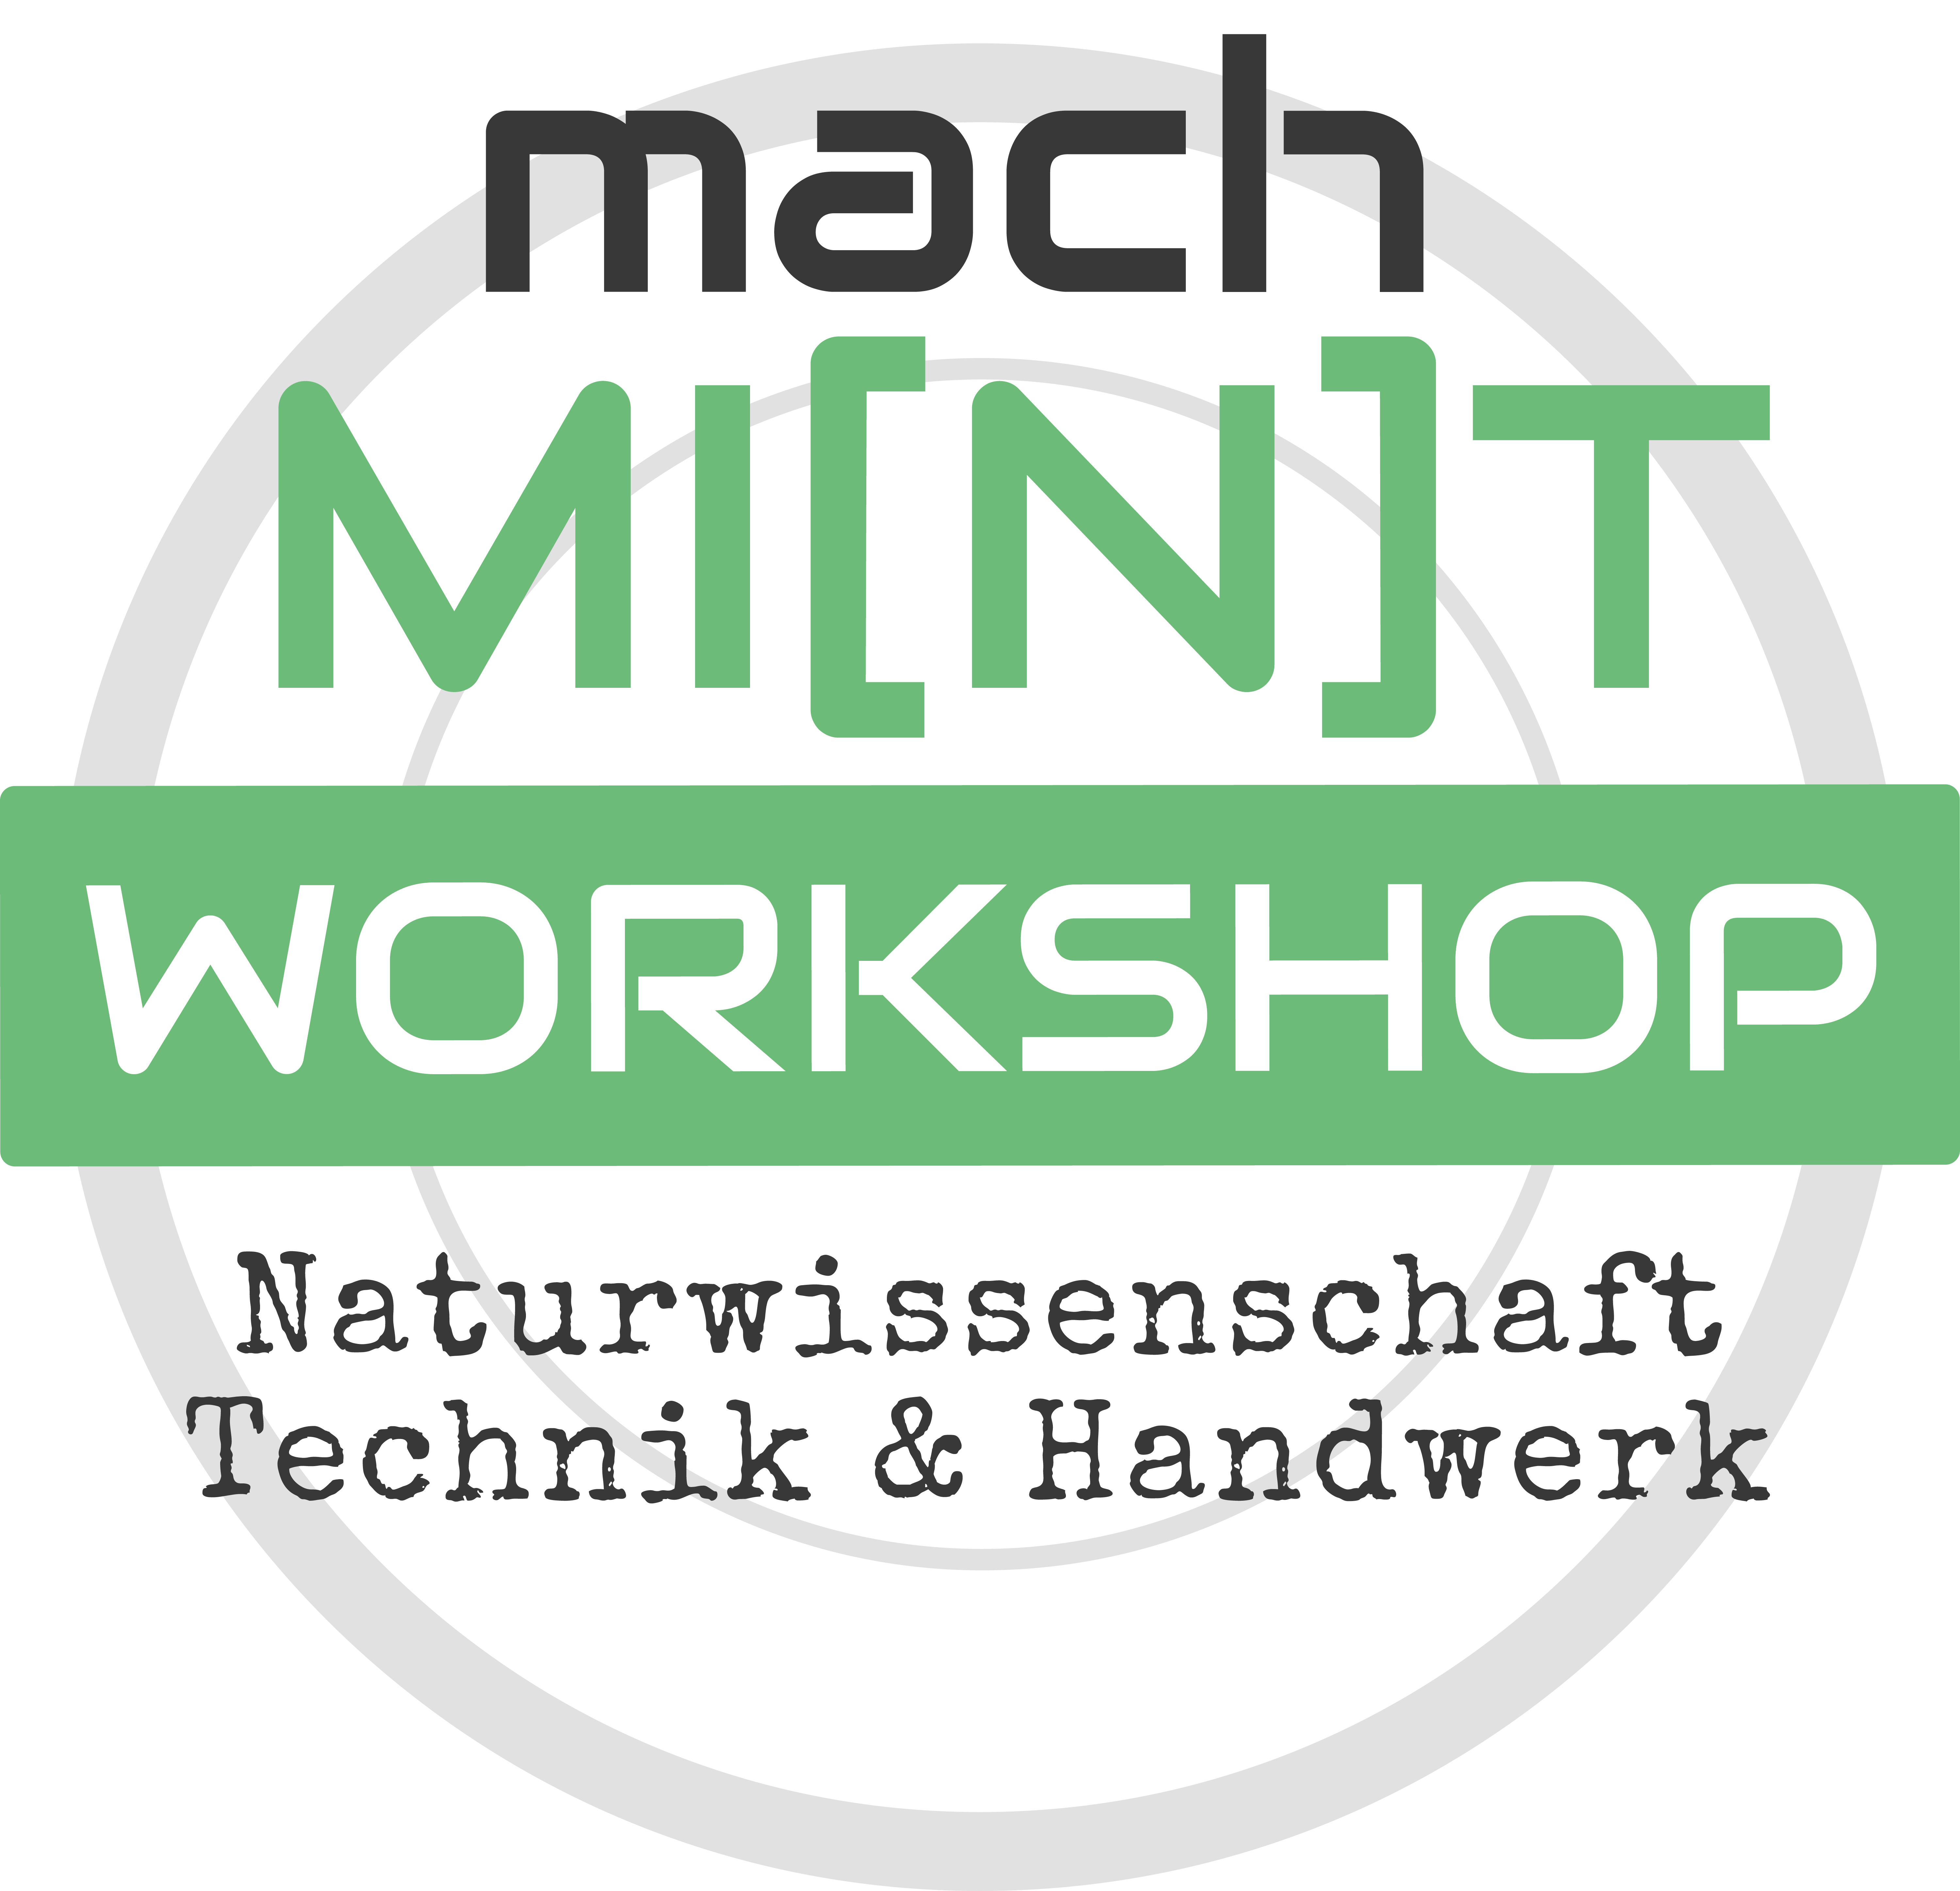 Mach MI(N(T - Workshop